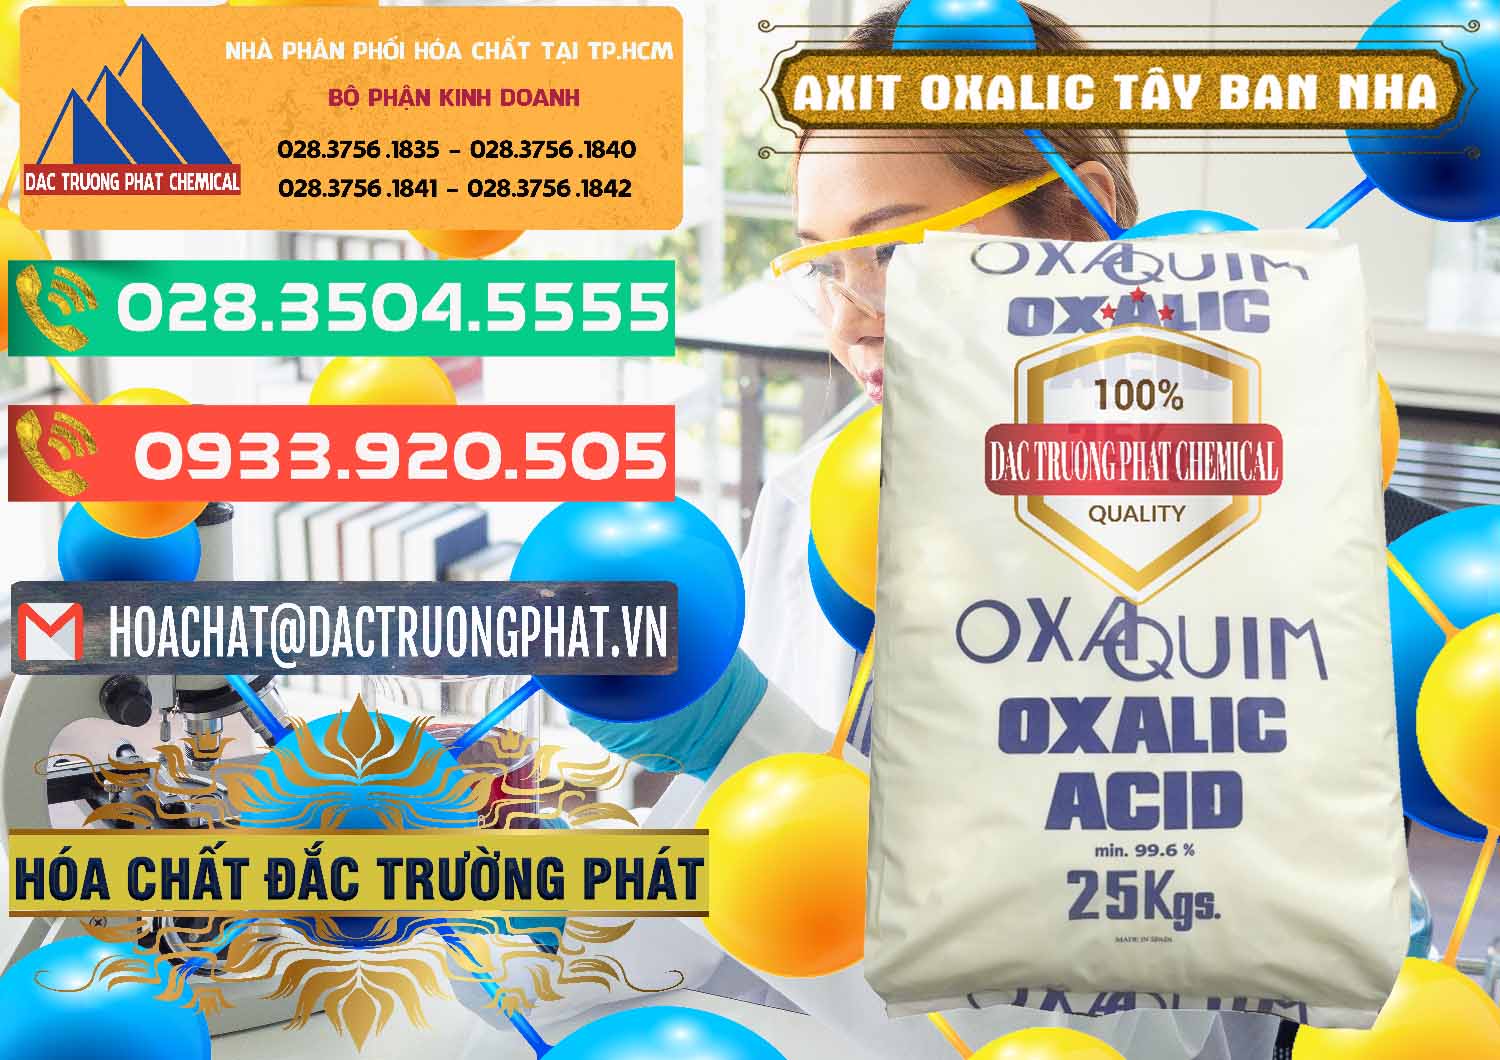 Cty chuyên bán & cung cấp Acid Oxalic – Axit Oxalic 99.6% Tây Ban Nha Spain - 0269 - Chuyên cung cấp và phân phối hóa chất tại TP.HCM - congtyhoachat.com.vn